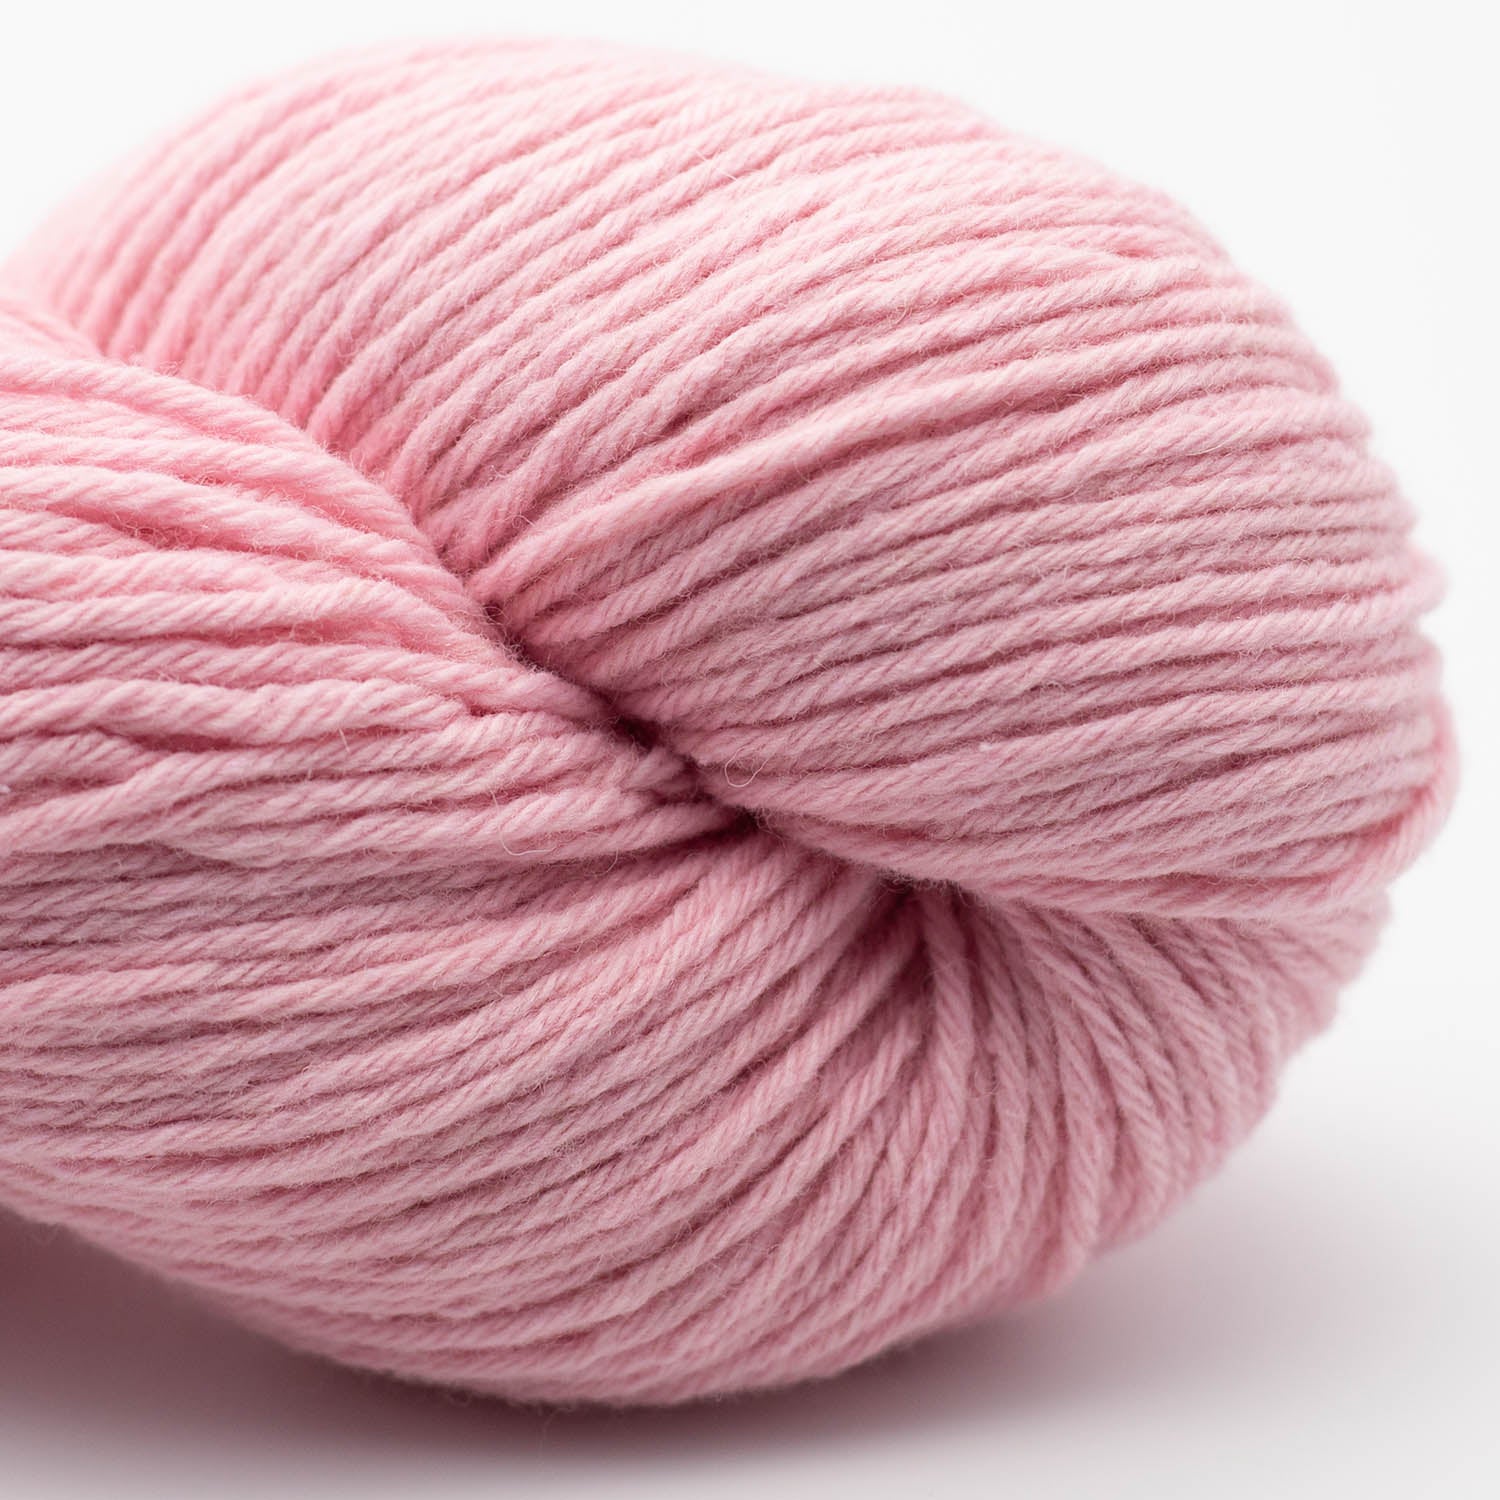 BC Garn Big Bio Balance GOTS Certified yarn, 100g in colour Rosa 20.